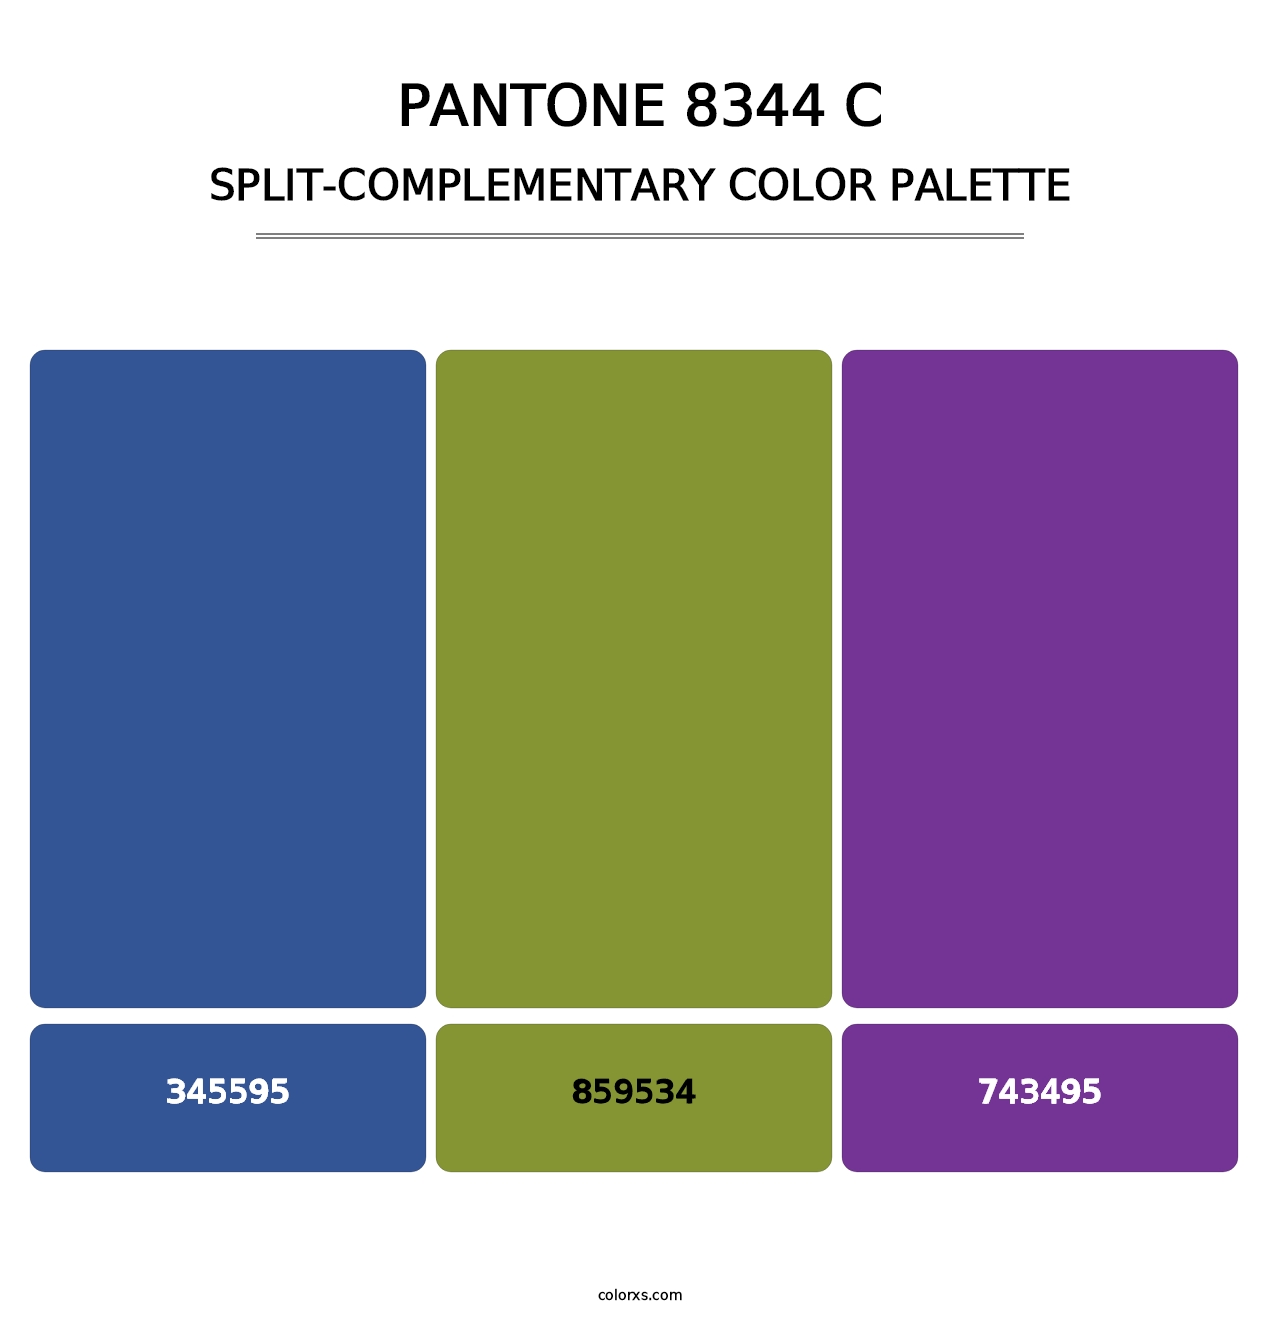 PANTONE 8344 C - Split-Complementary Color Palette